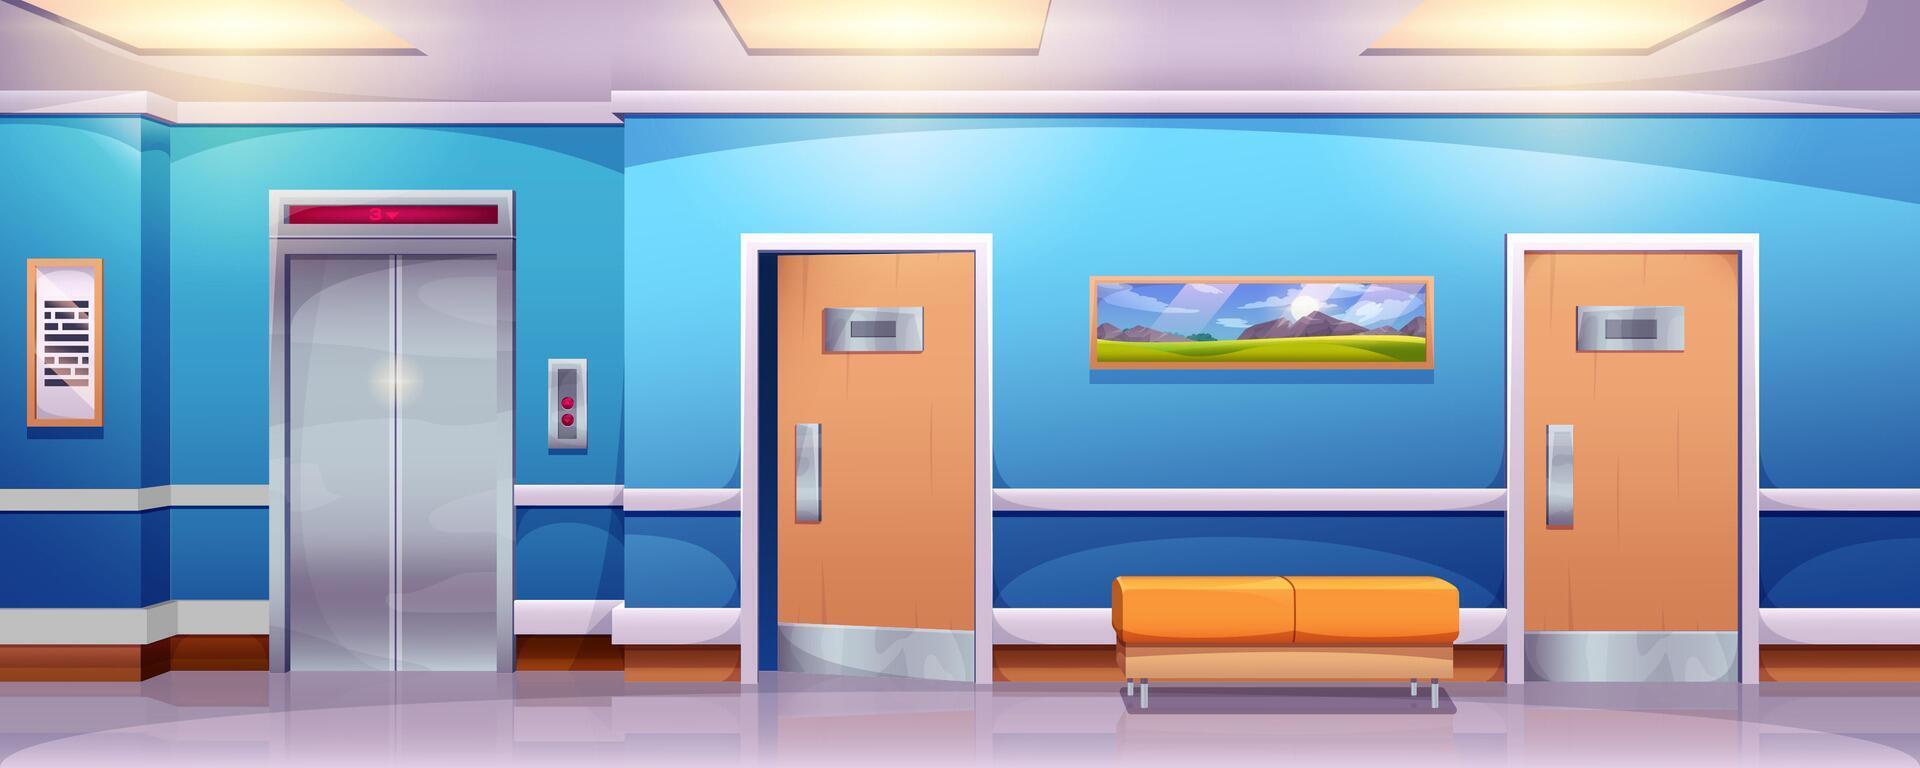 sjukhus korridor interiör vektor tecknad serie illustration. tömma hall i medicinsk klinik med hiss, soffa och dörrar till avdelningar. väntar hall eller lobby för patienter med soffa och hiss